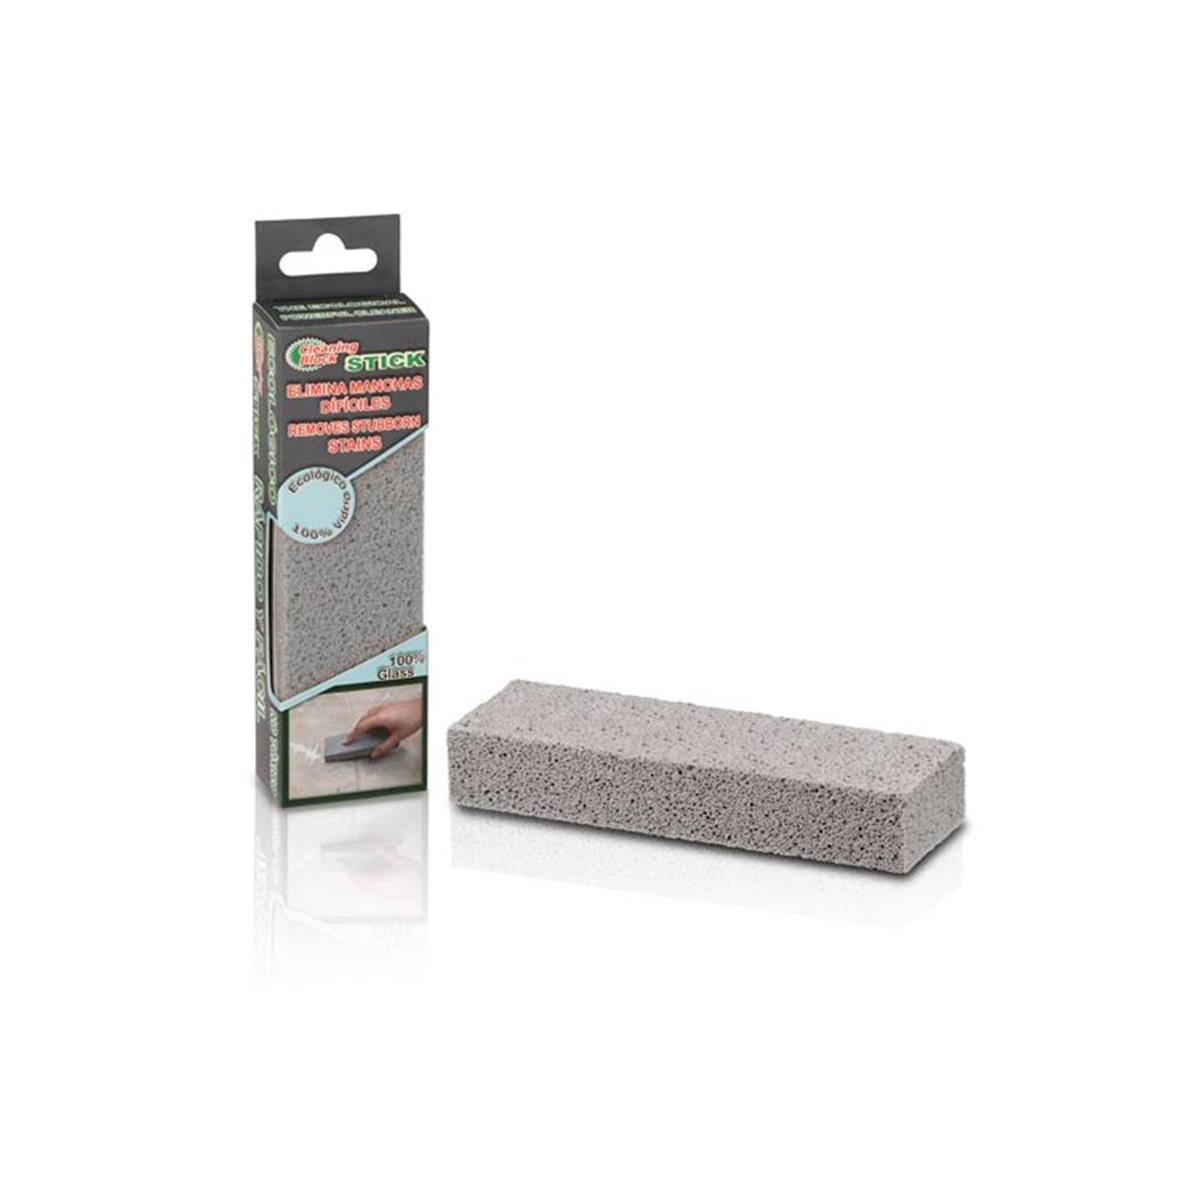 Cleaning Block Stick Fliesen/Metall Reinigungsstein grau